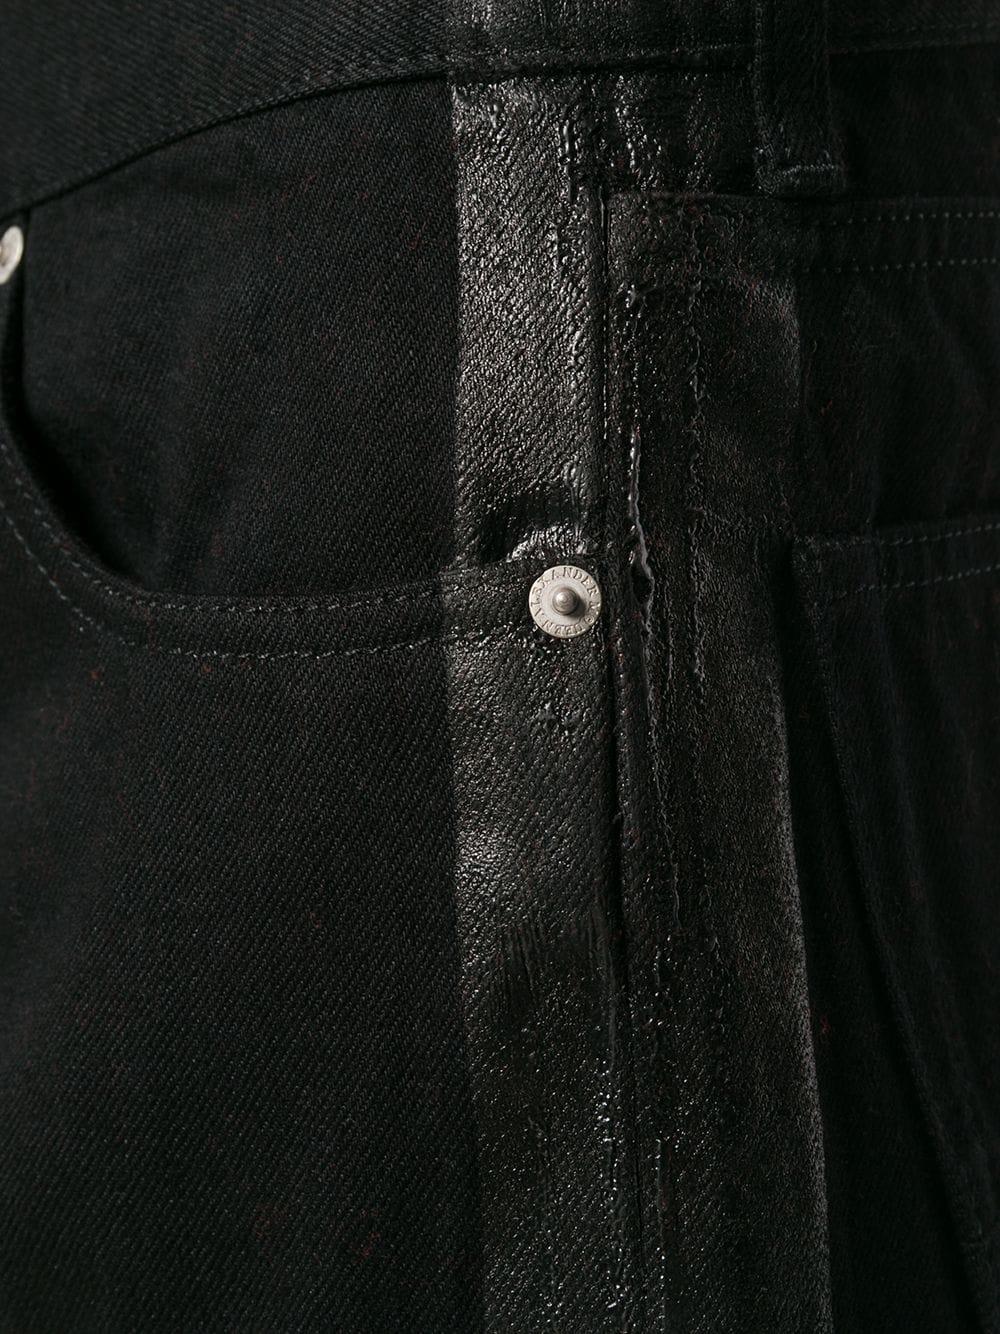 Alexander McQueen Denim Side Stripe Jeans in Black for Men - Lyst